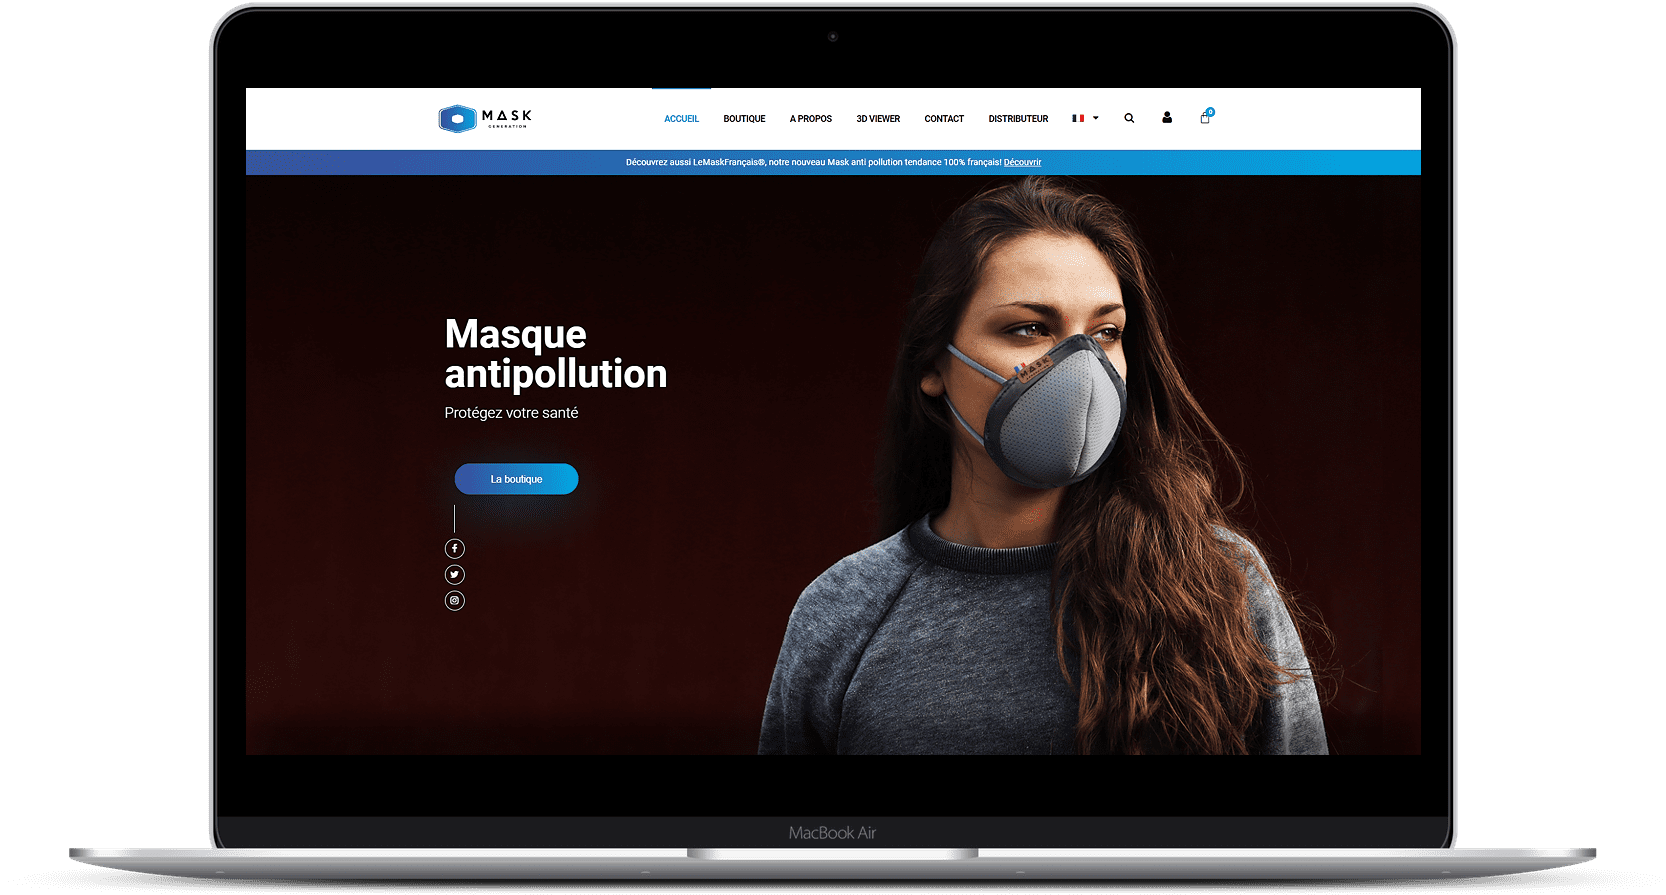 Mask Generation website model